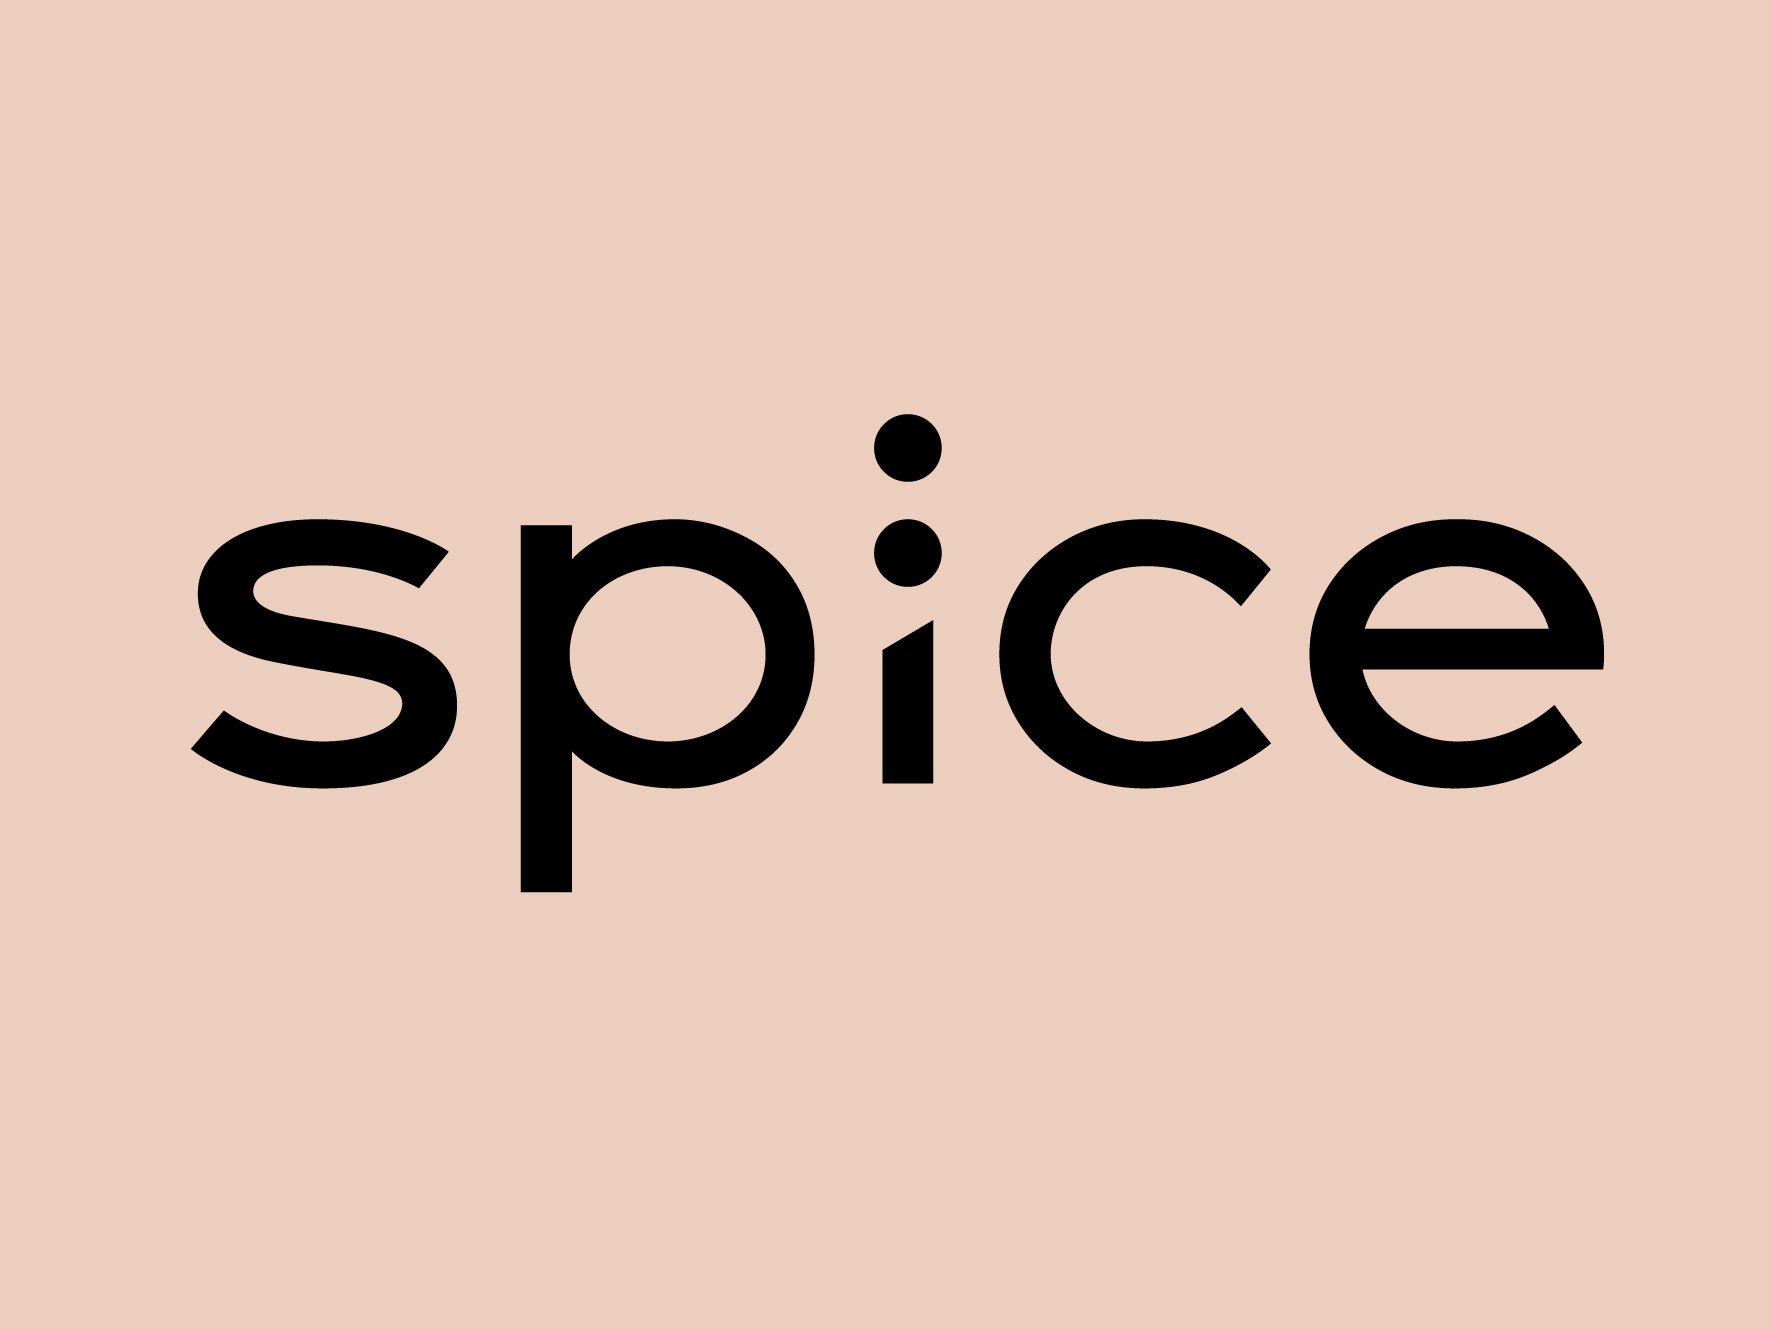 Торговый центр “Spice” расширяет свой технологический сегмент 